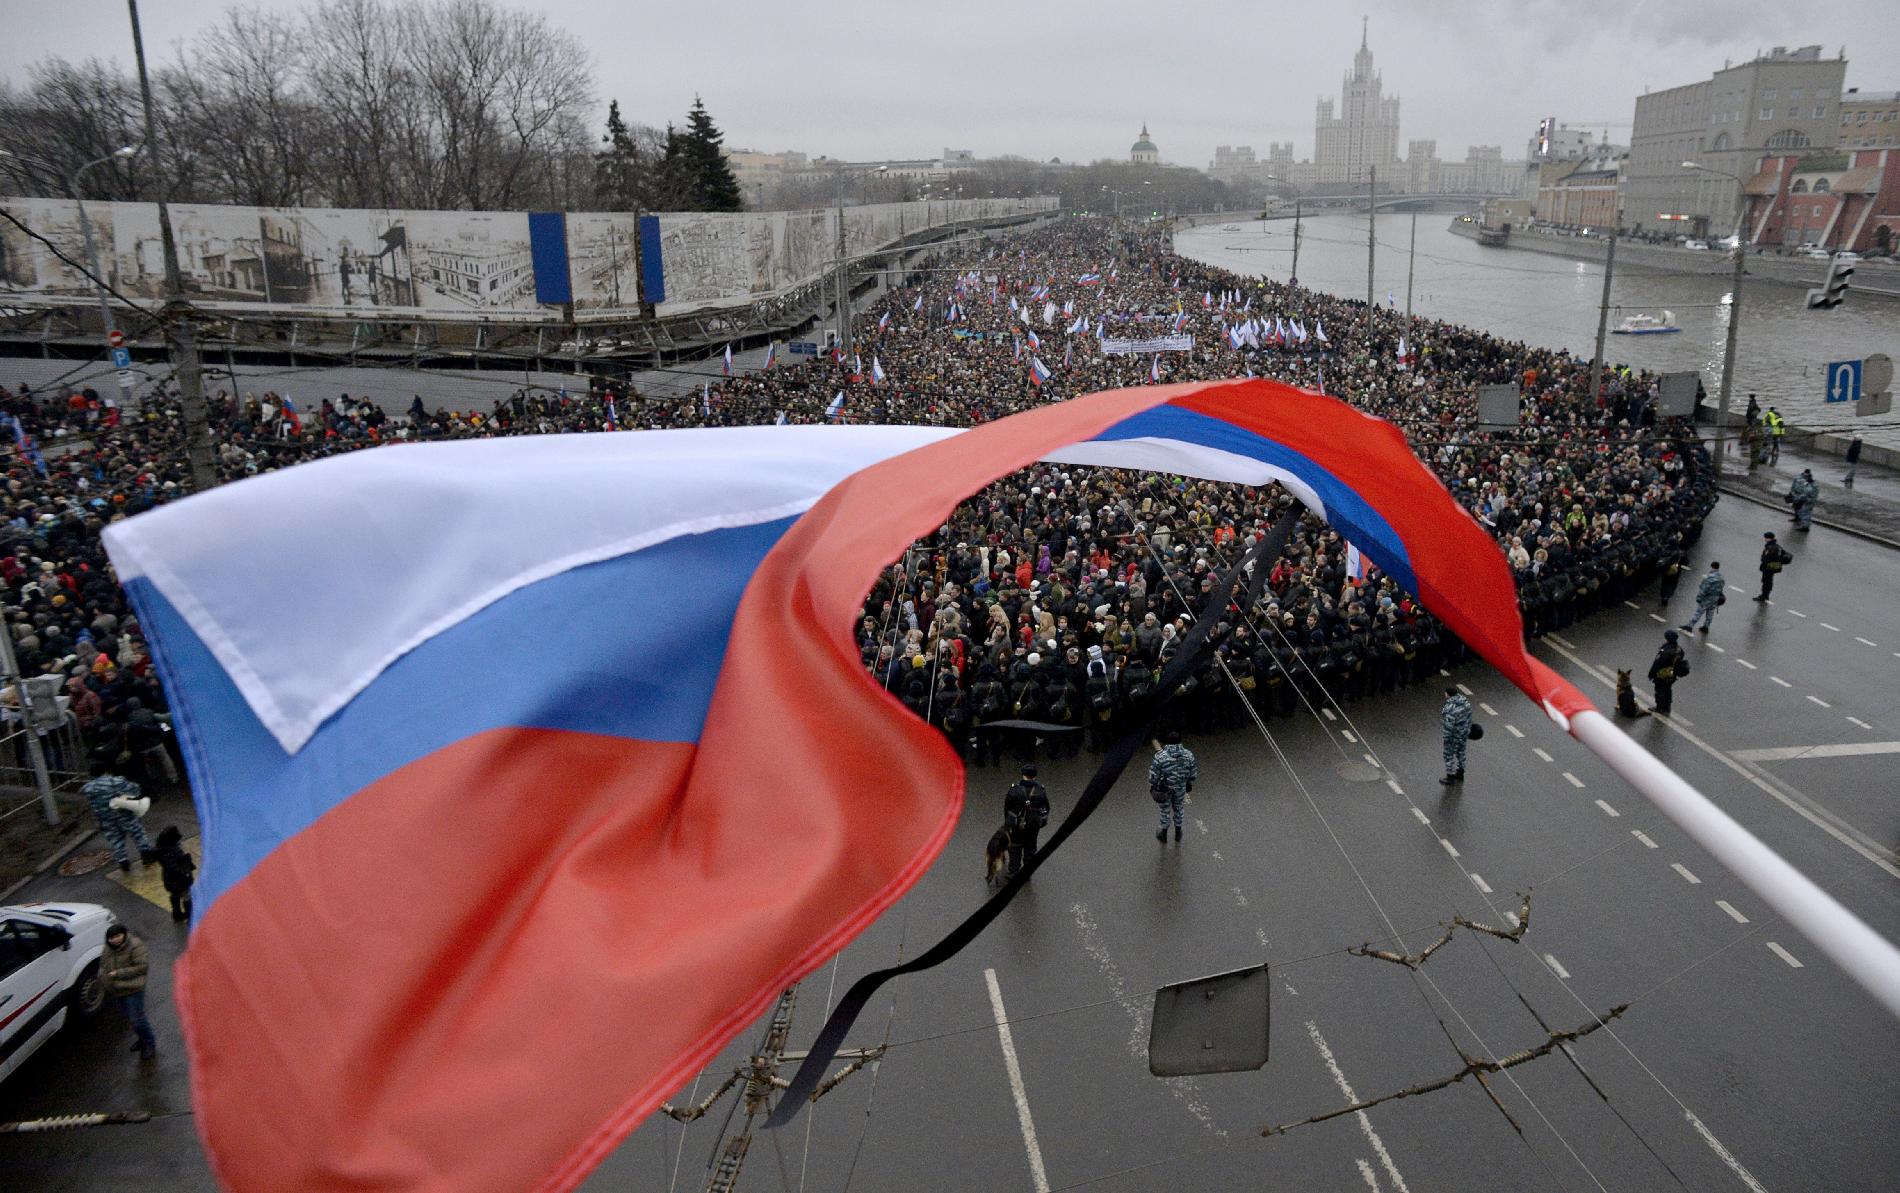 Oroszországot bíráló zárónyilatkozatot fogadott el az EBESZ parlamenti közgyűlése